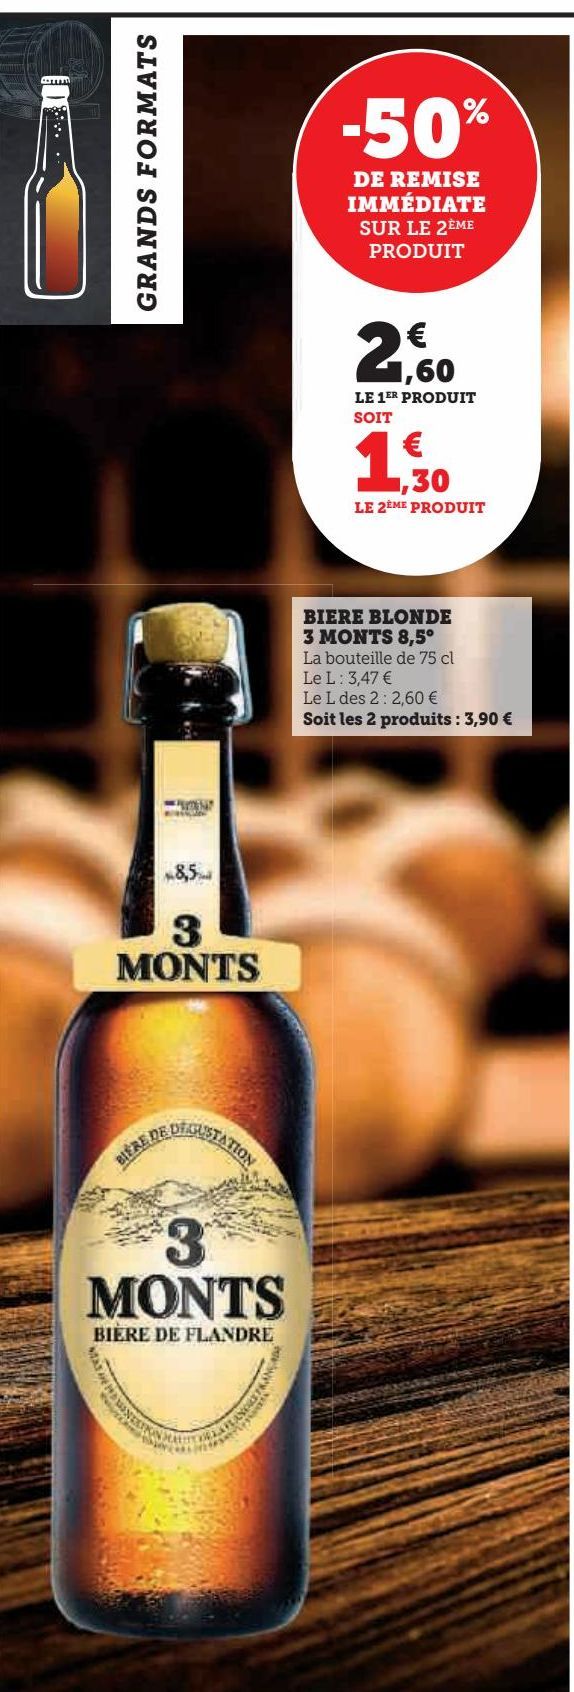 bière blonde 3 Monts 8.5ª